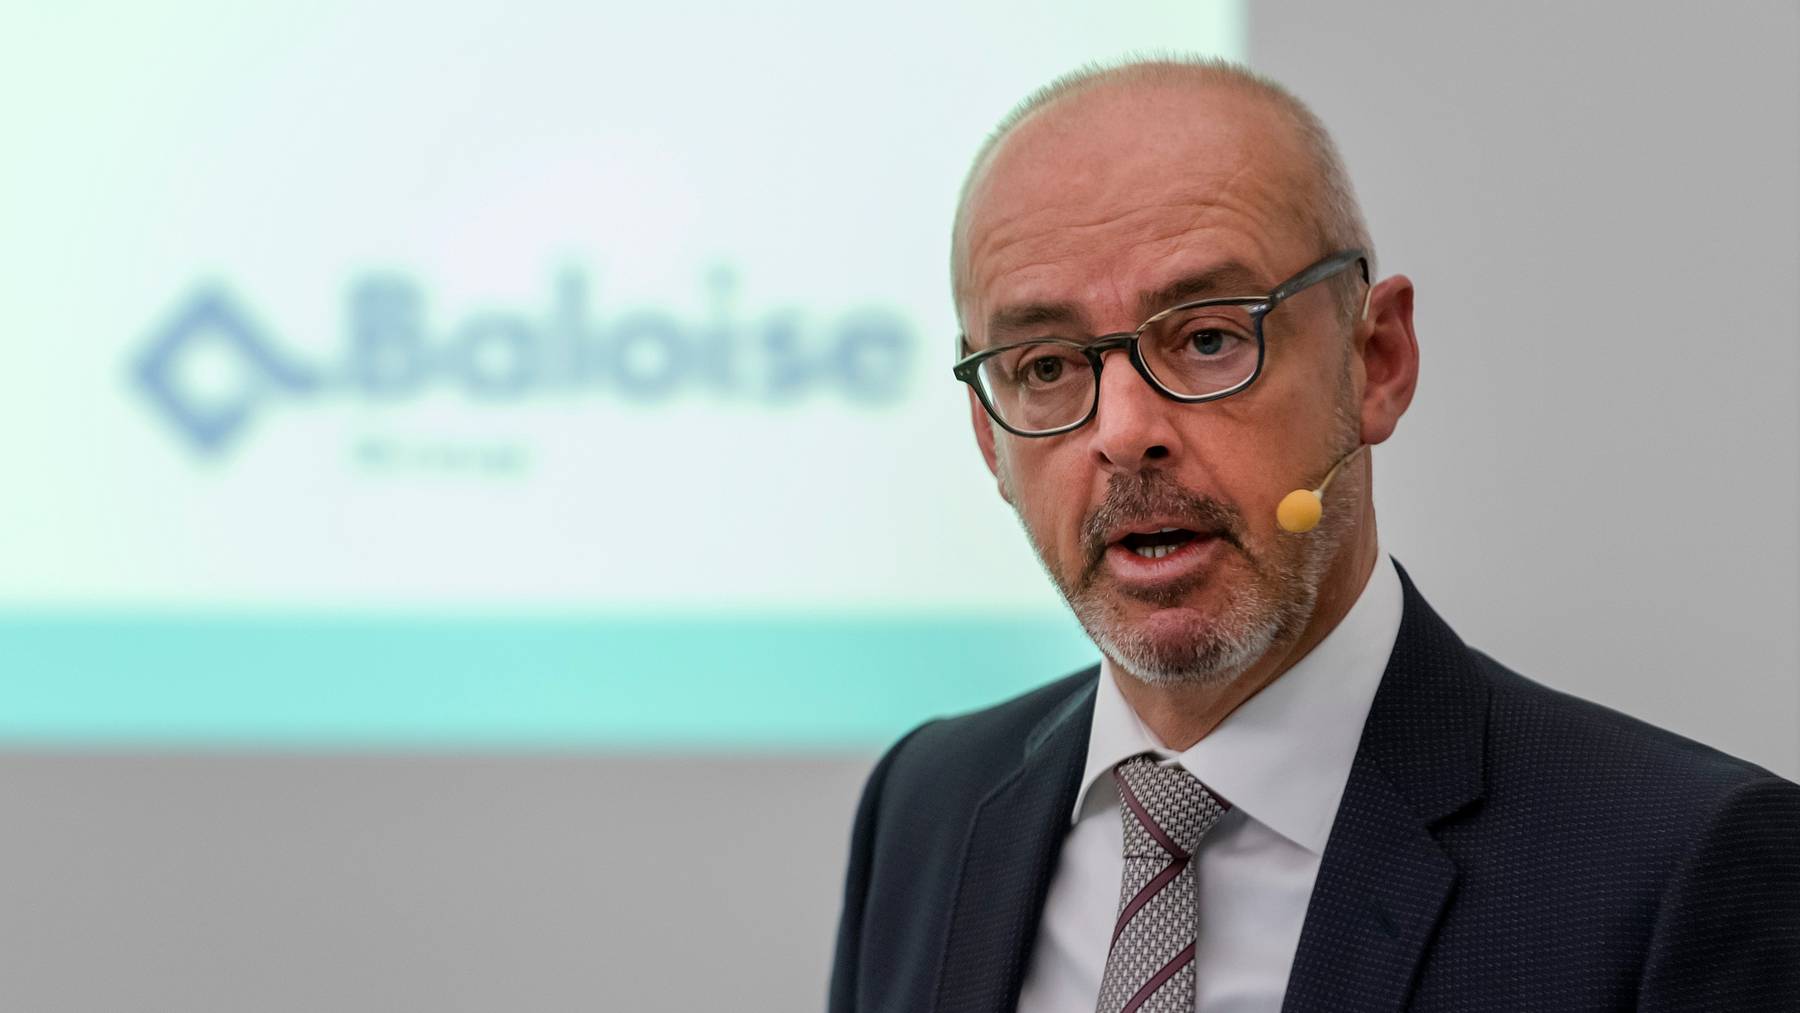 Gert De Winter ist seit 2016 CEO von Baloise.